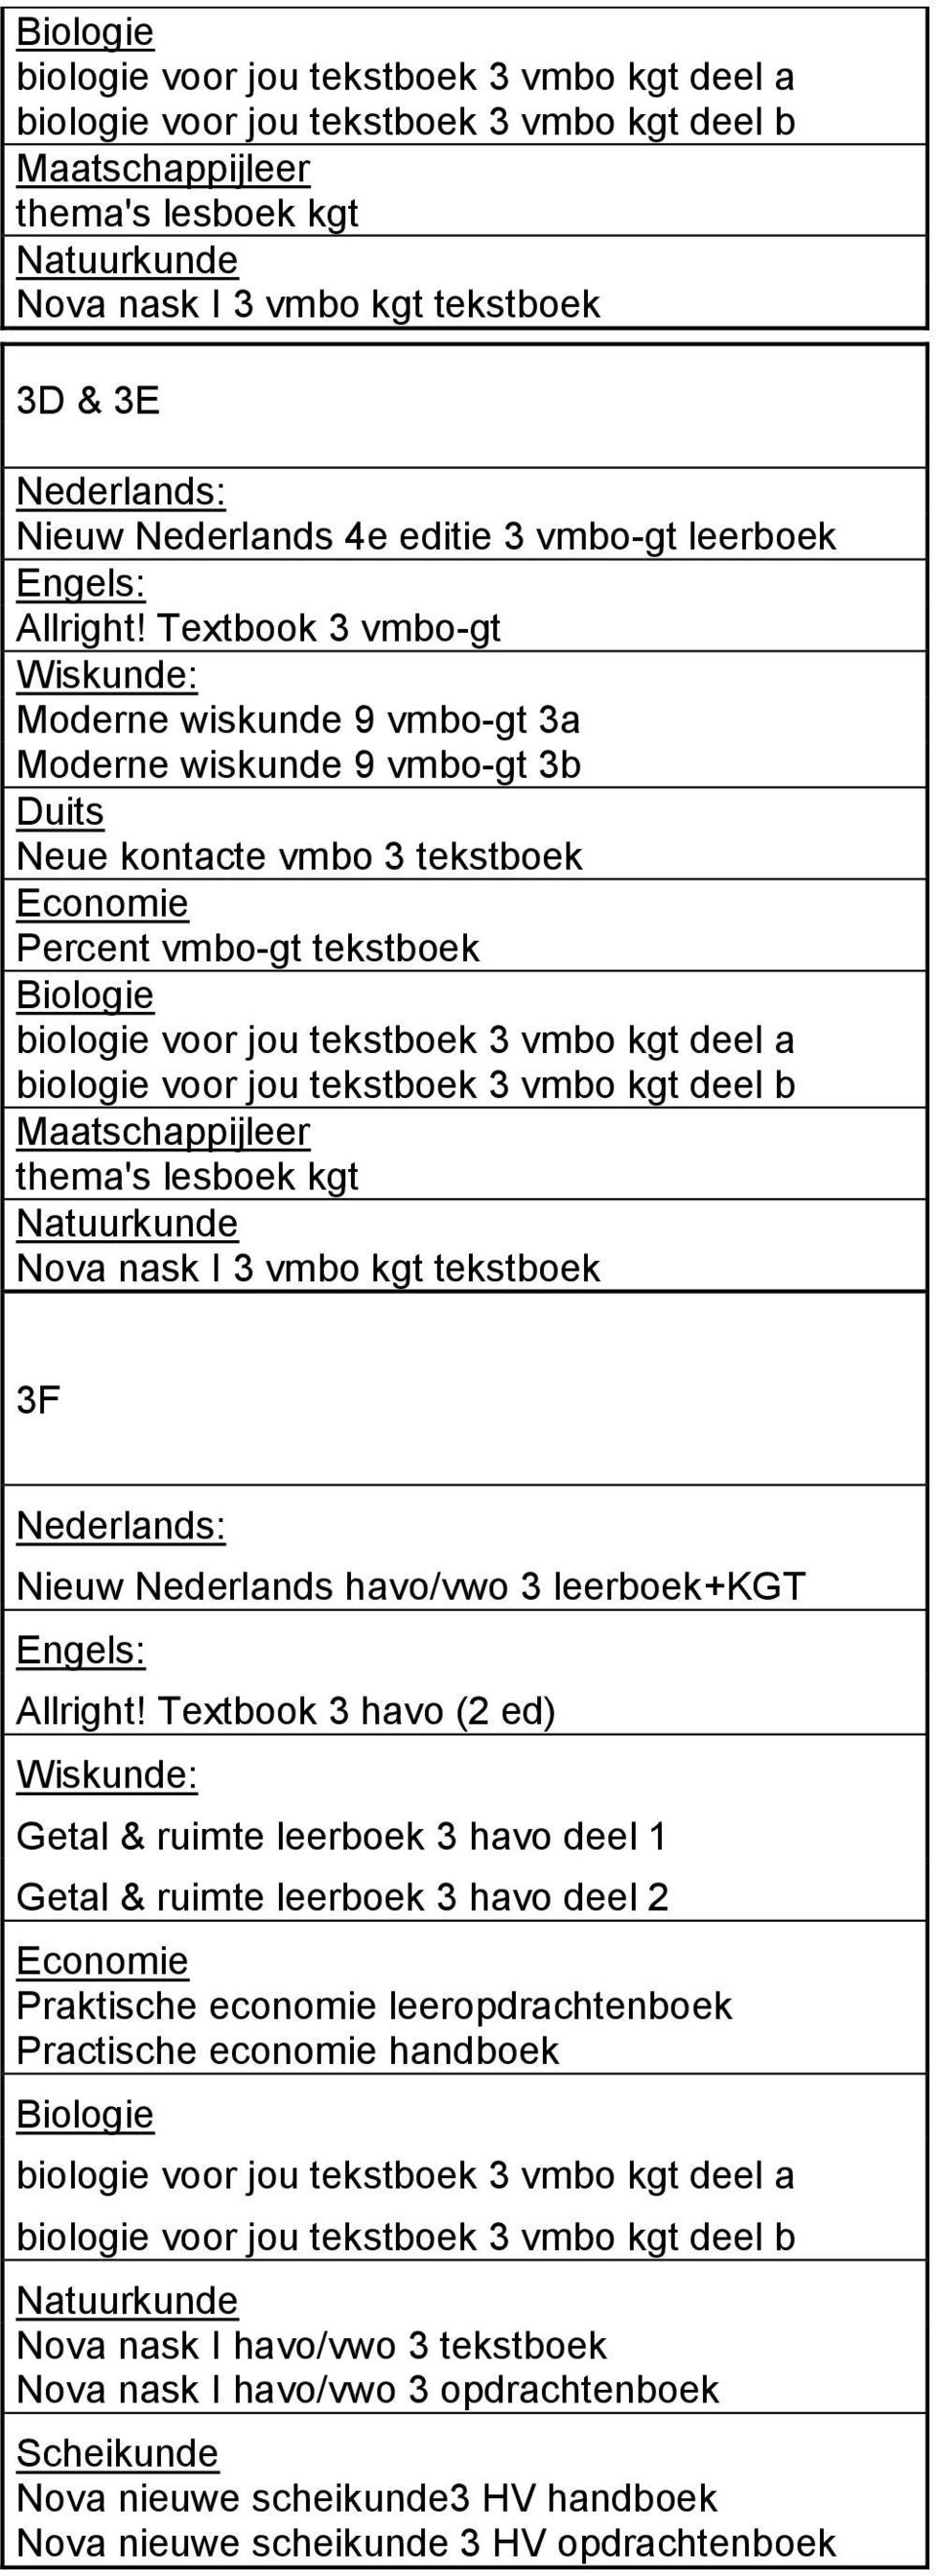 Nova nask I 3 vmbo kgt tekstboek 3F Nieuw Nederlands havo/vwo 3 leerboek+kgt Allright!